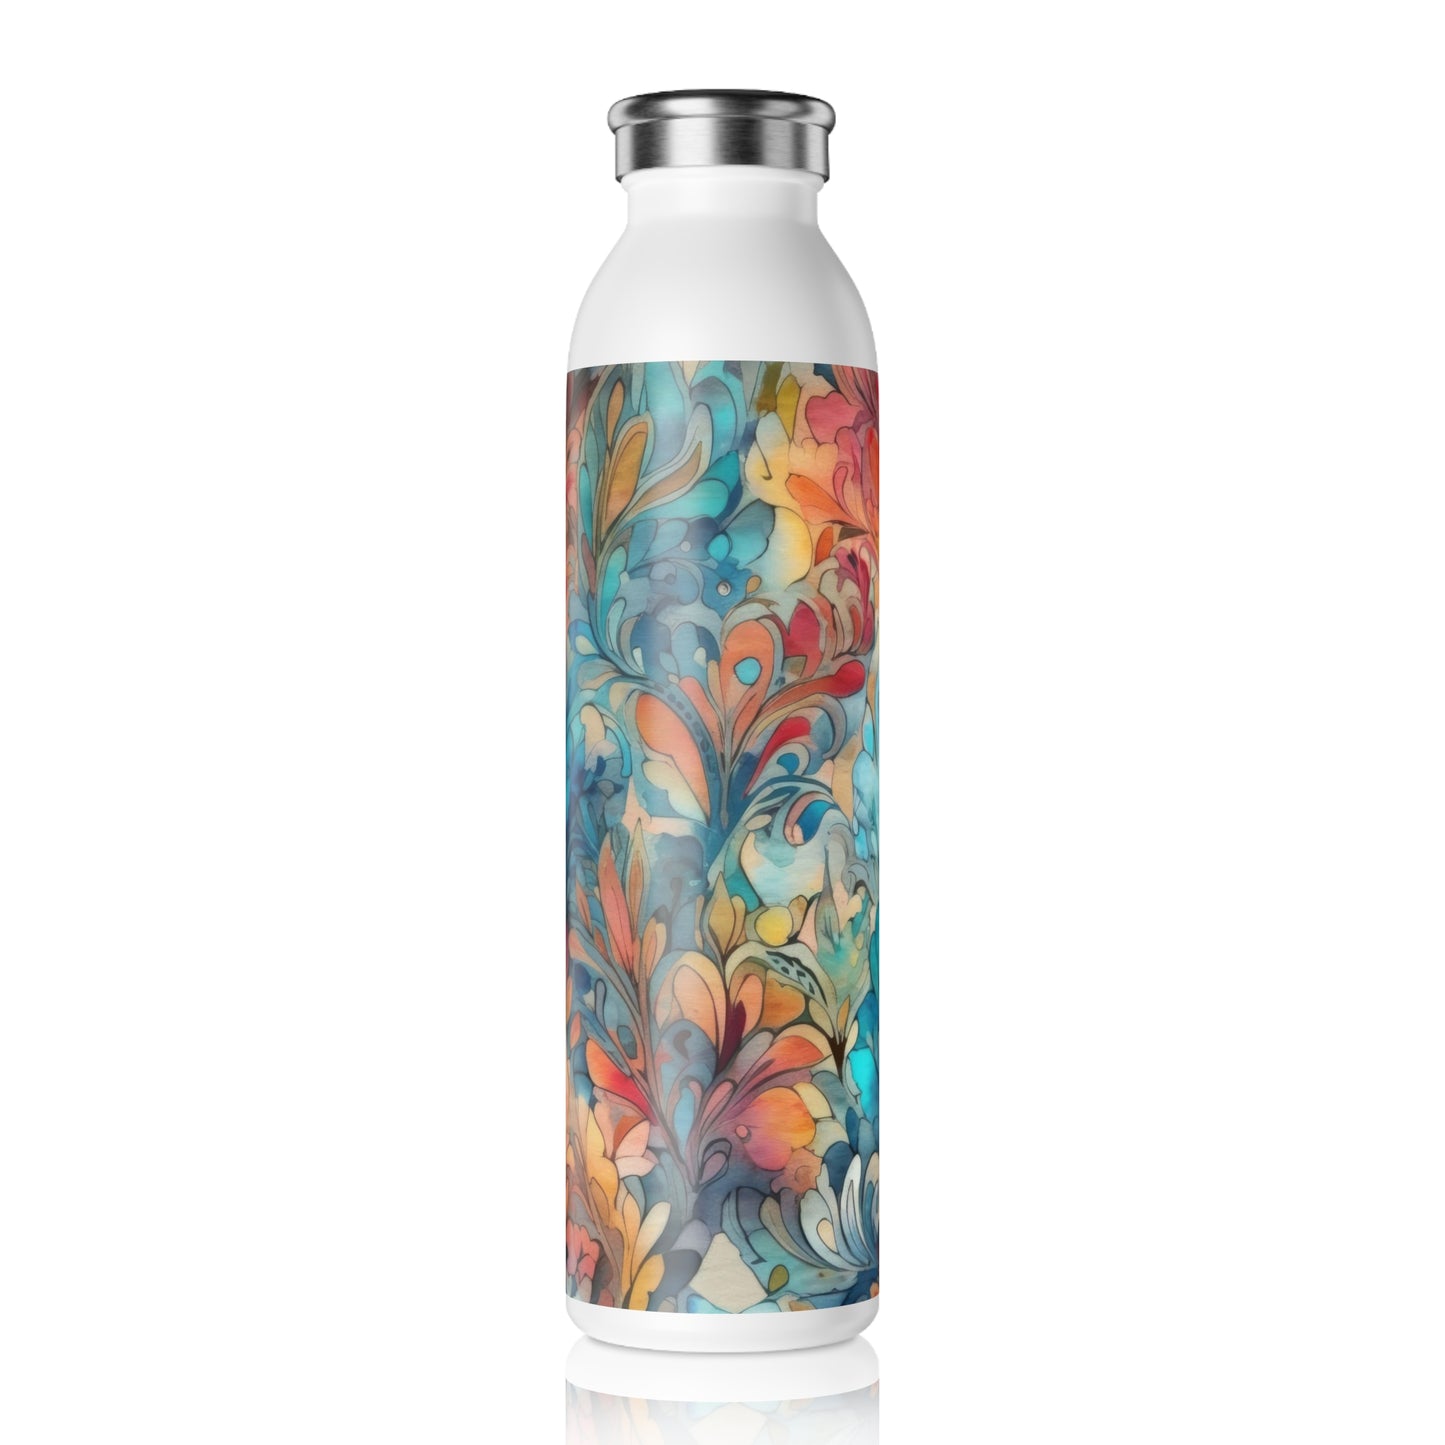 Tapestry Designs 2.6 - Slim Water Bottle - Stainless Steel - 20oz